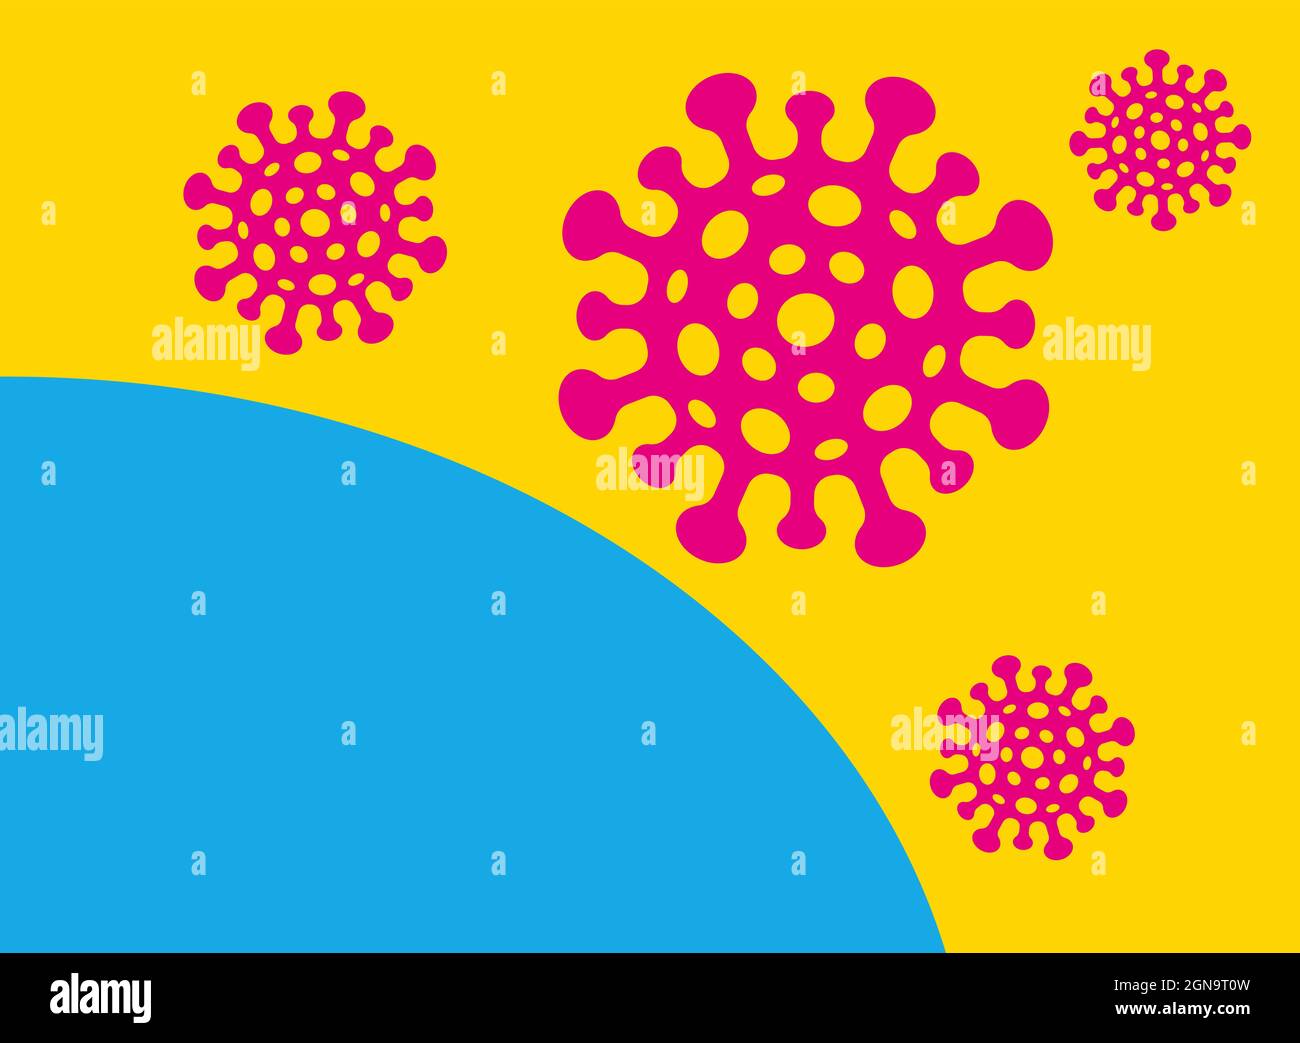 Poster vectoriel avec coronavirus en style CMJN. Illustration vectorielle de la COVID-19 dans un style rétro. Arrêter le coronavirus. Illustration de Vecteur